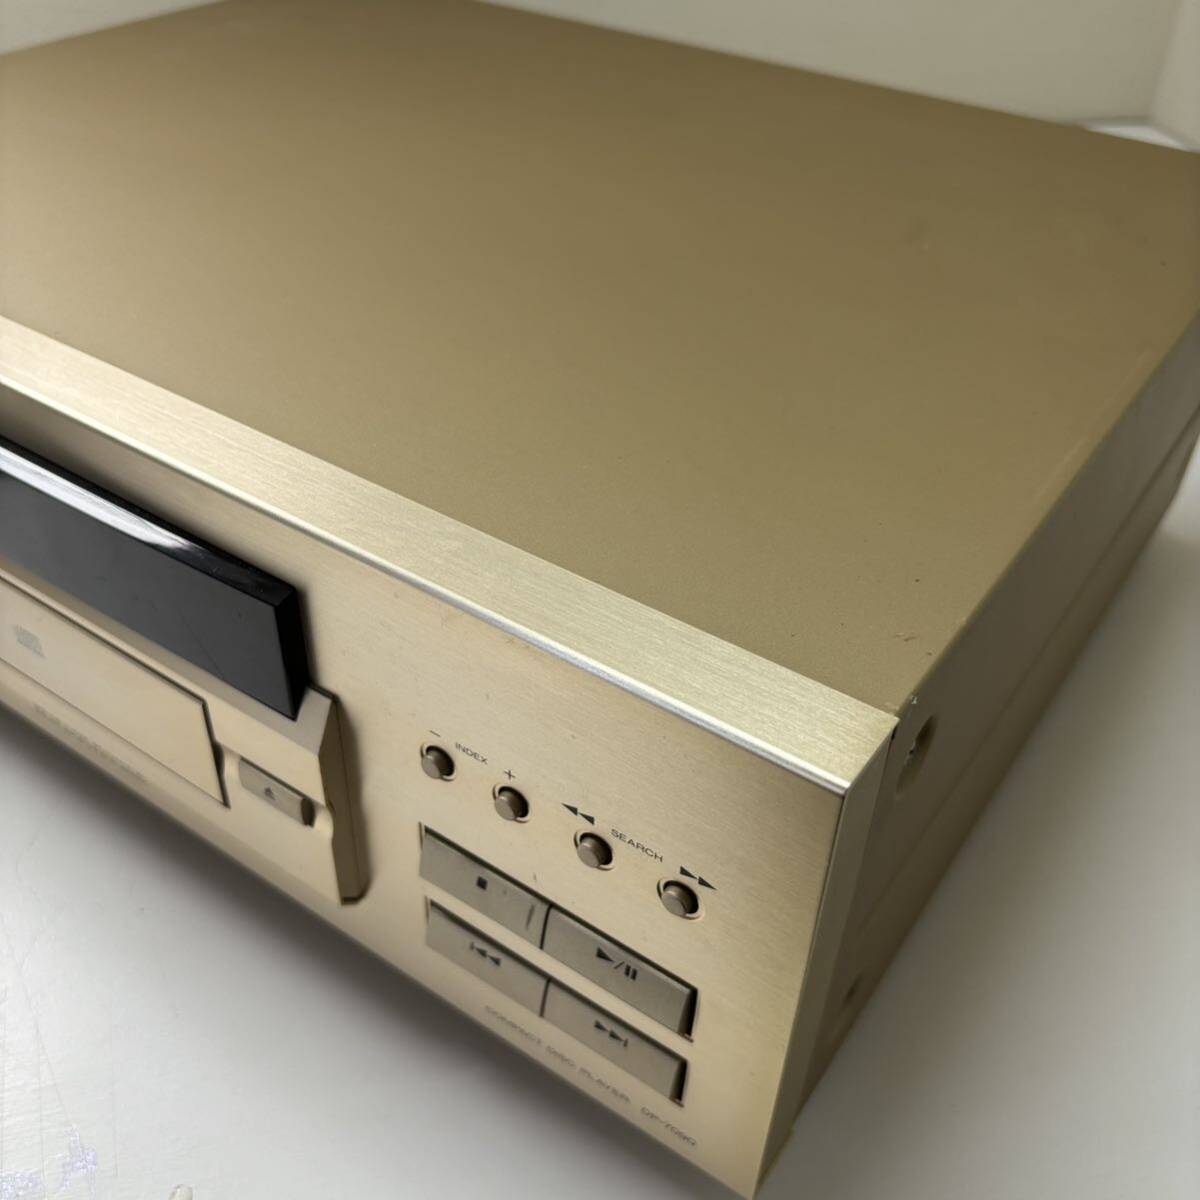 KENWOOD CD player DP-7090 compact design 22 bit D/A conversion height resolution digital filter optical digital output installing junk 